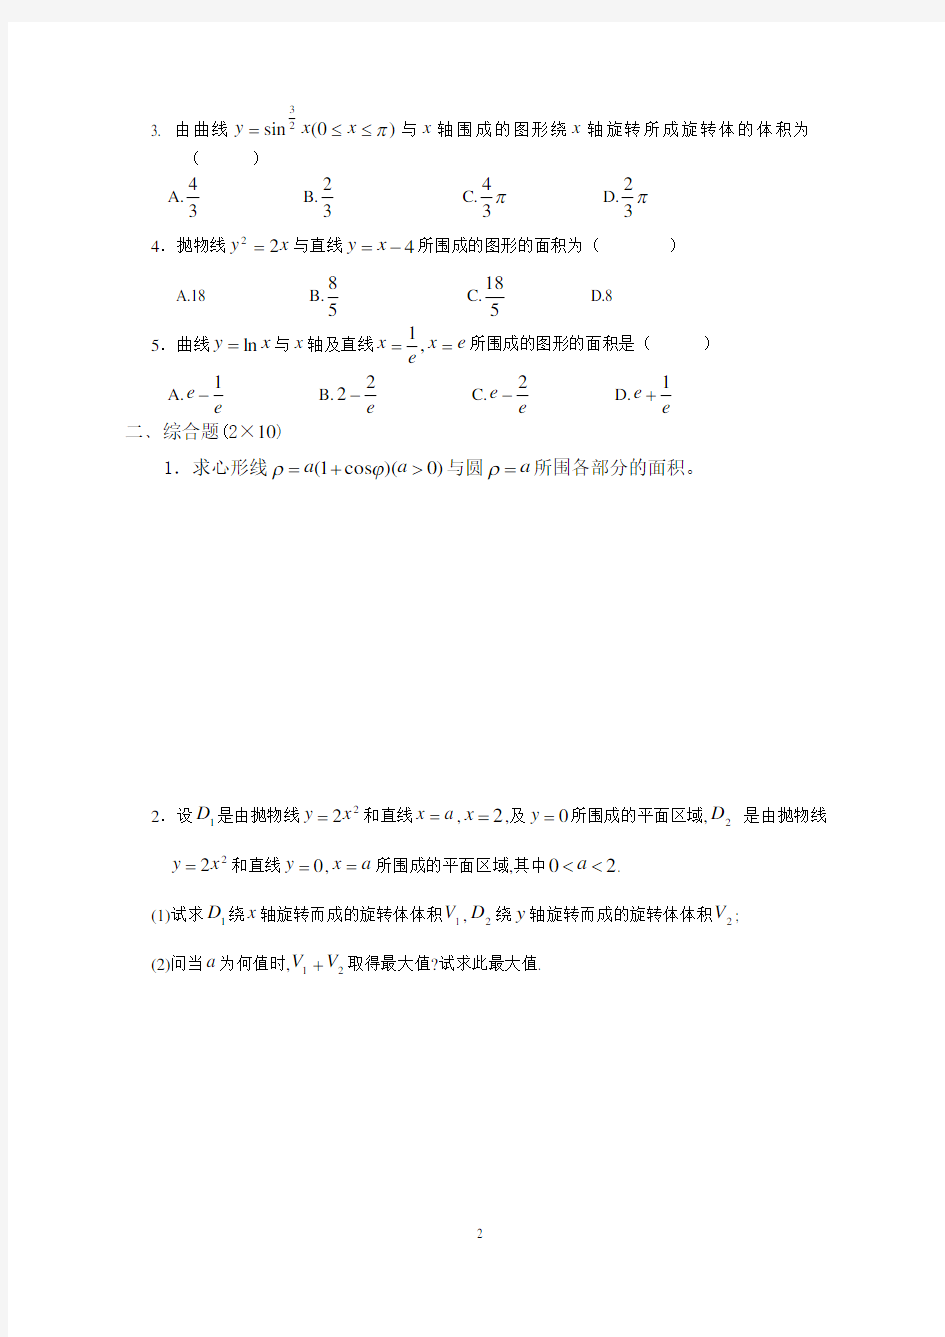 (完整)上海师范大学高数试题(16)